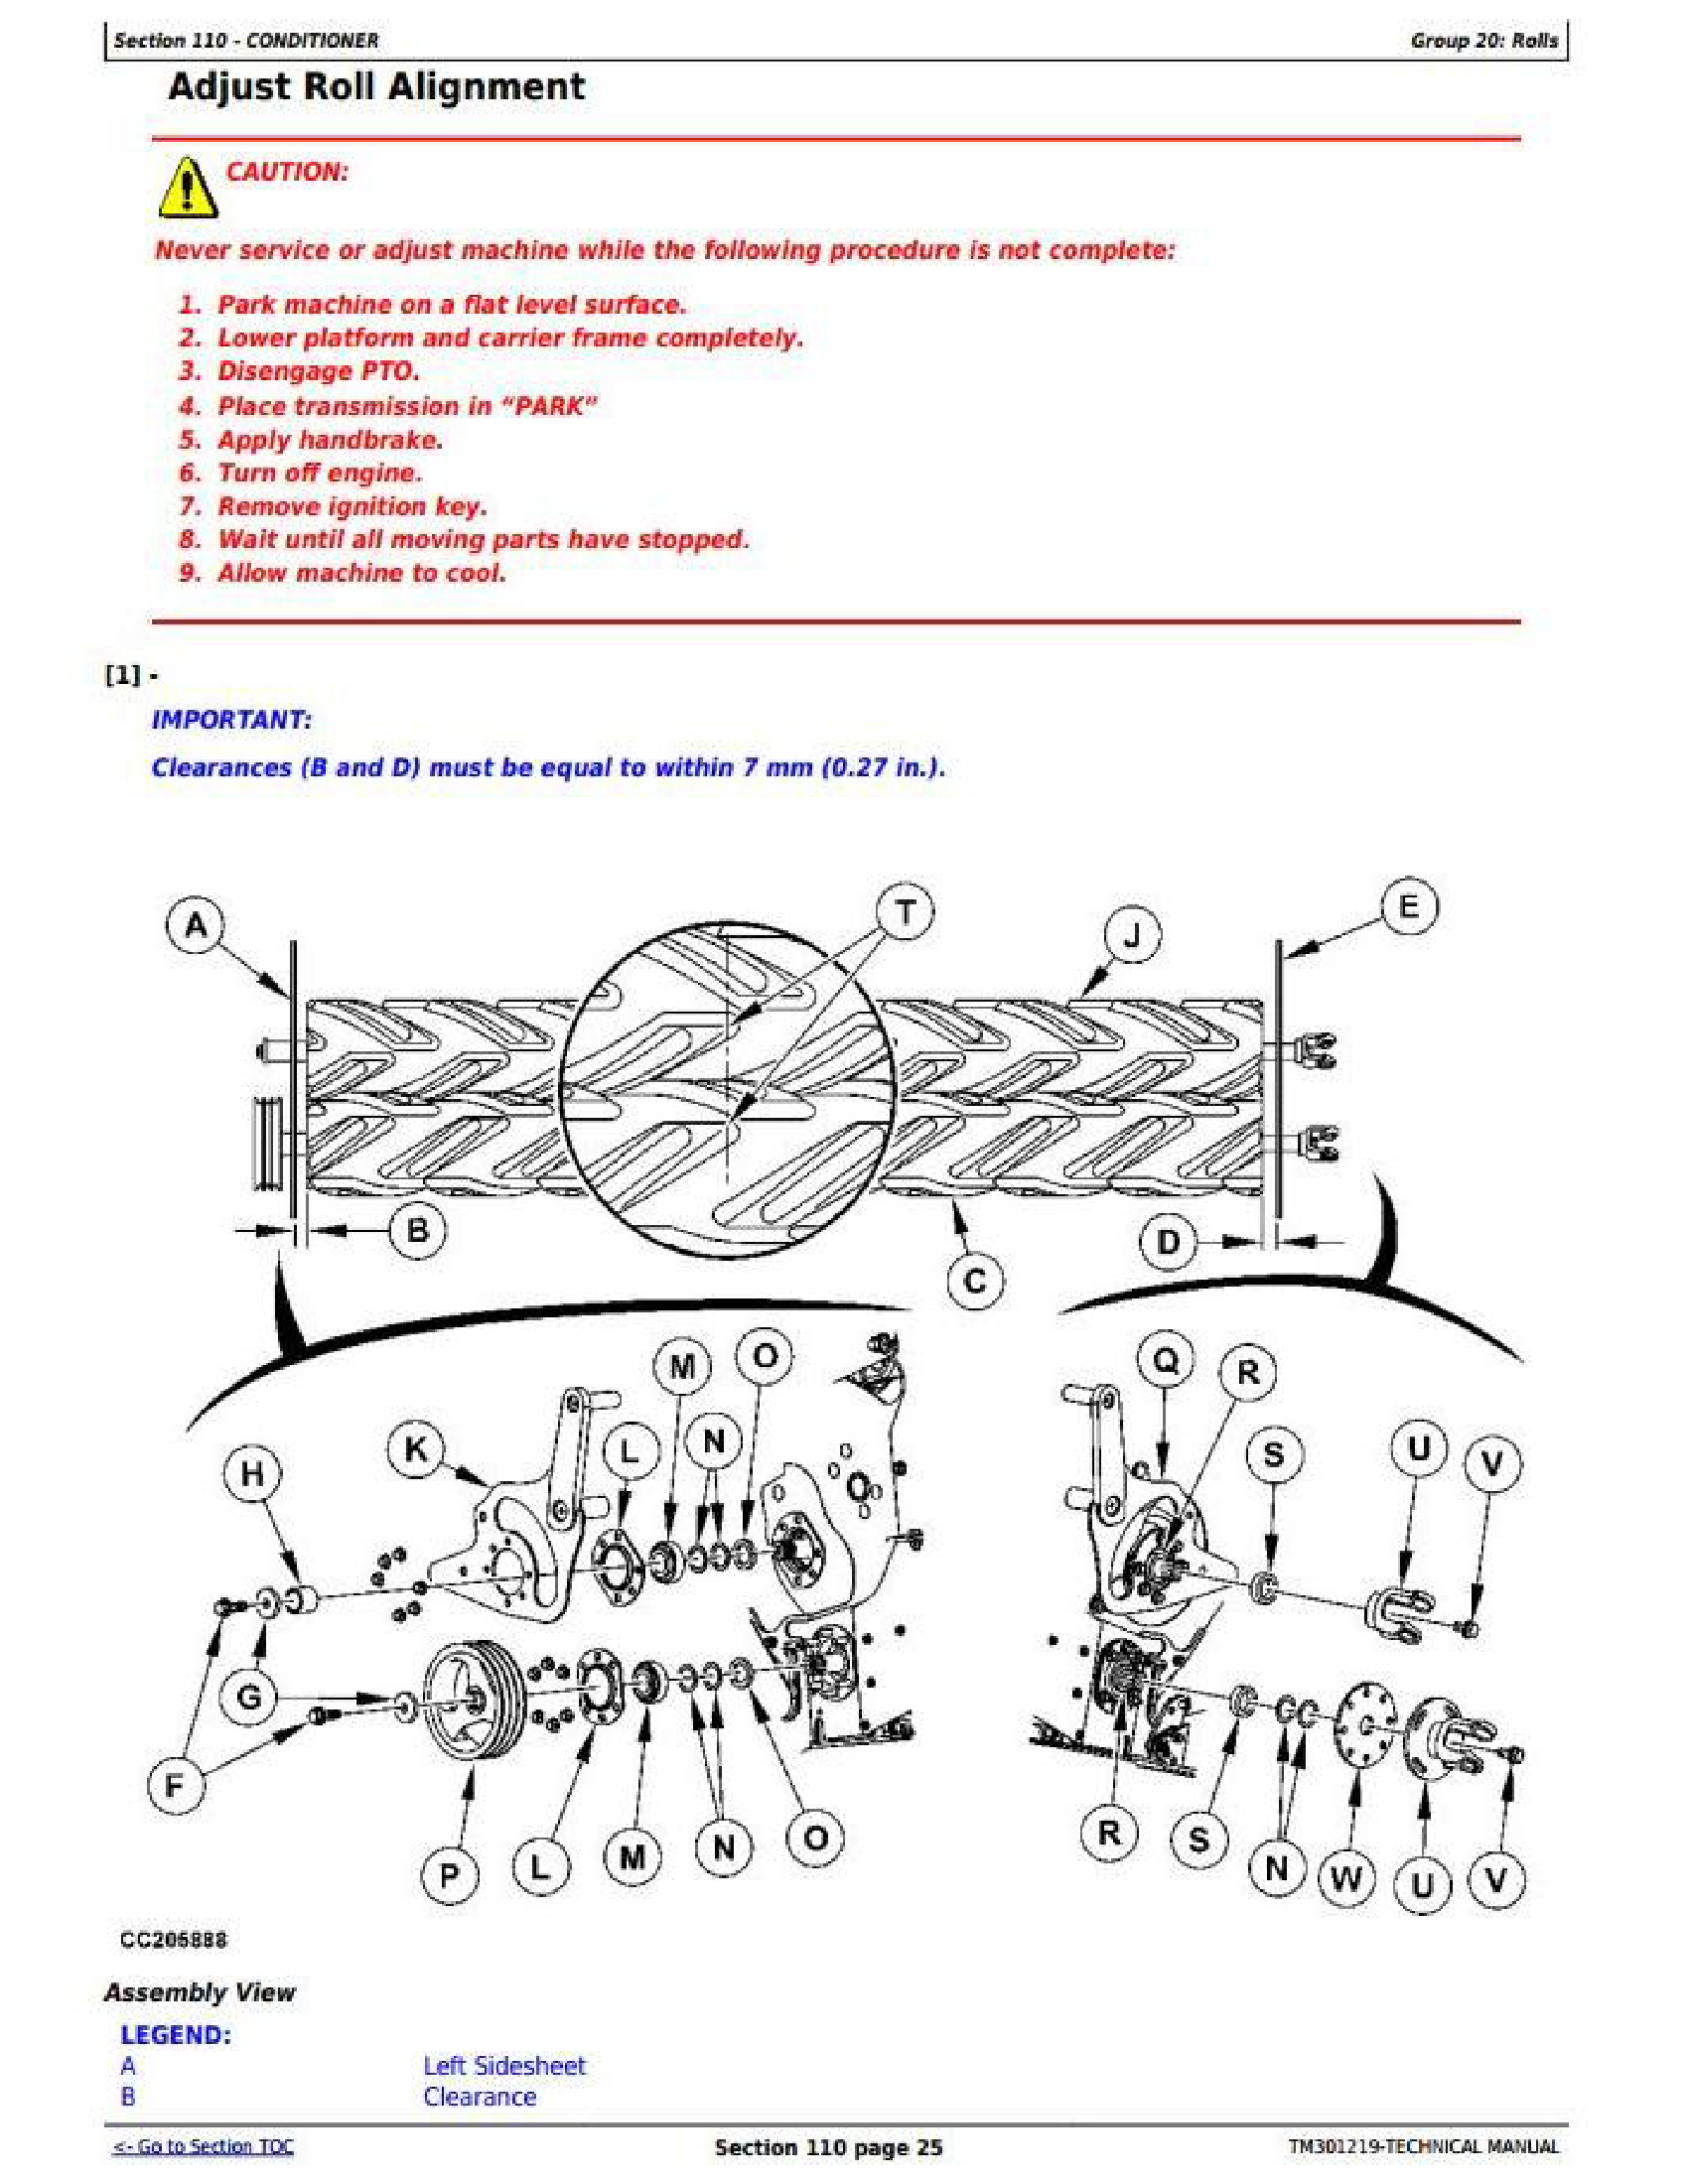 John Deere R450 manual pdf